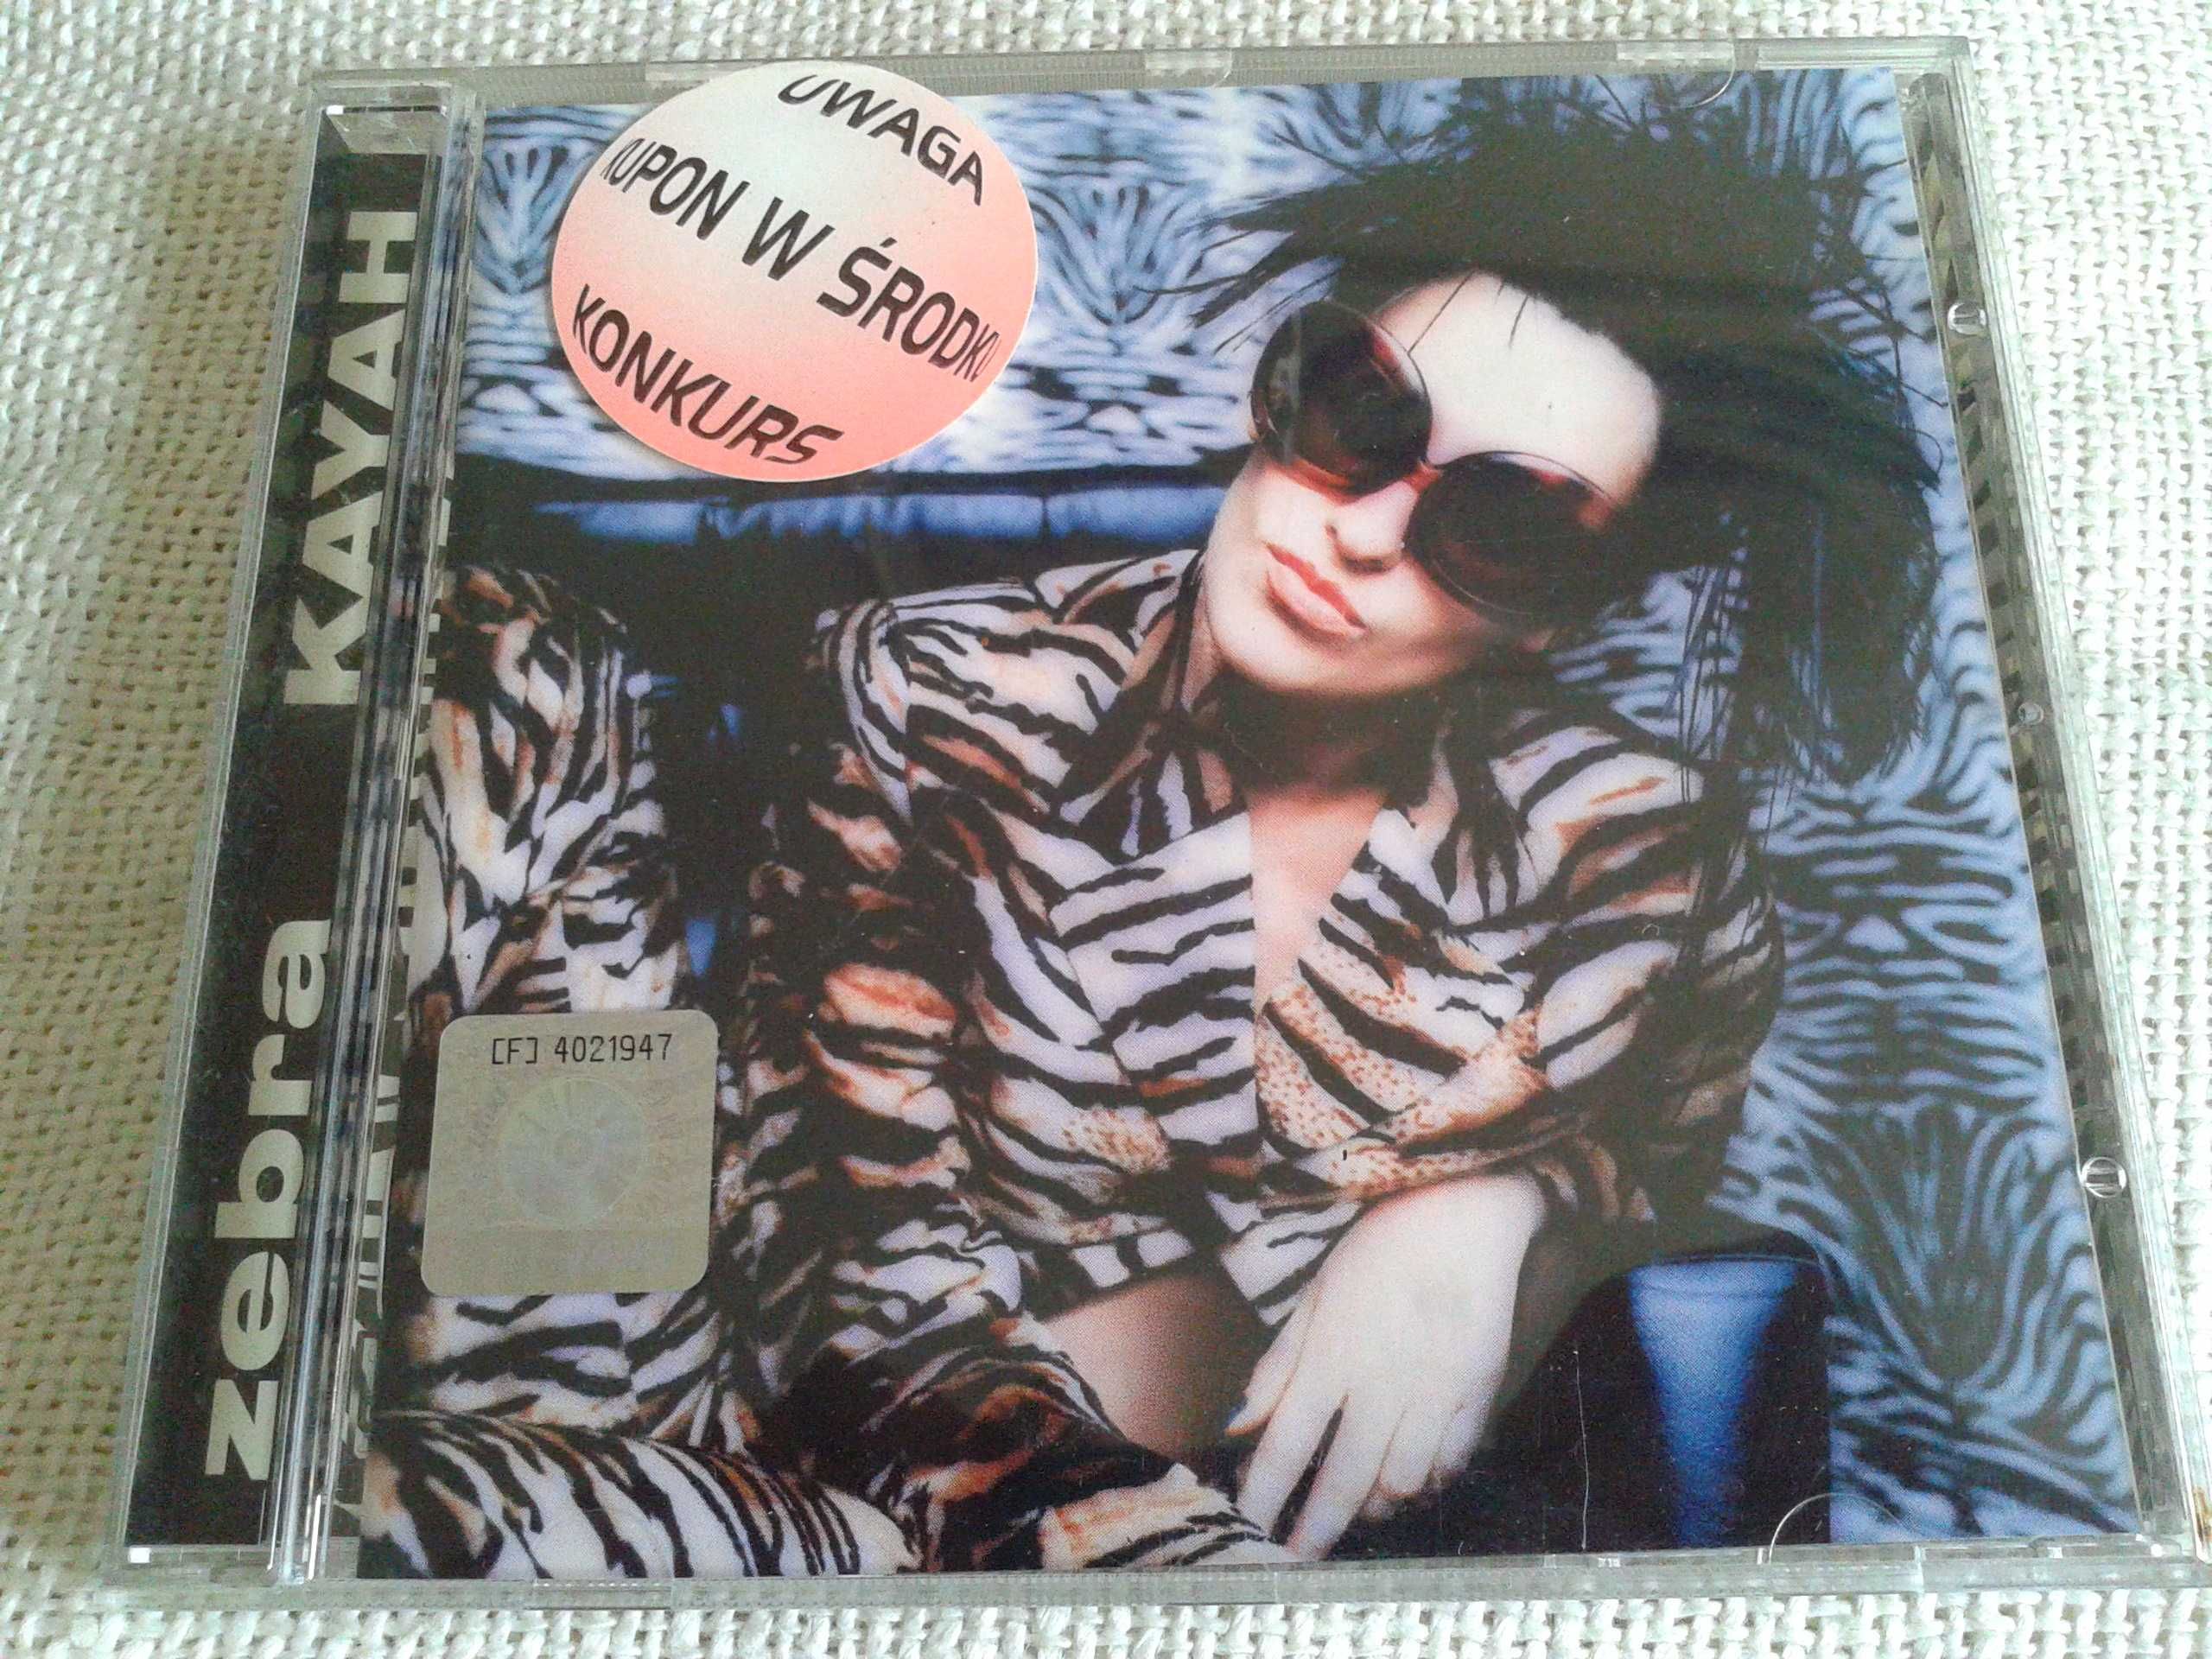 Kayah - Zebra  CD